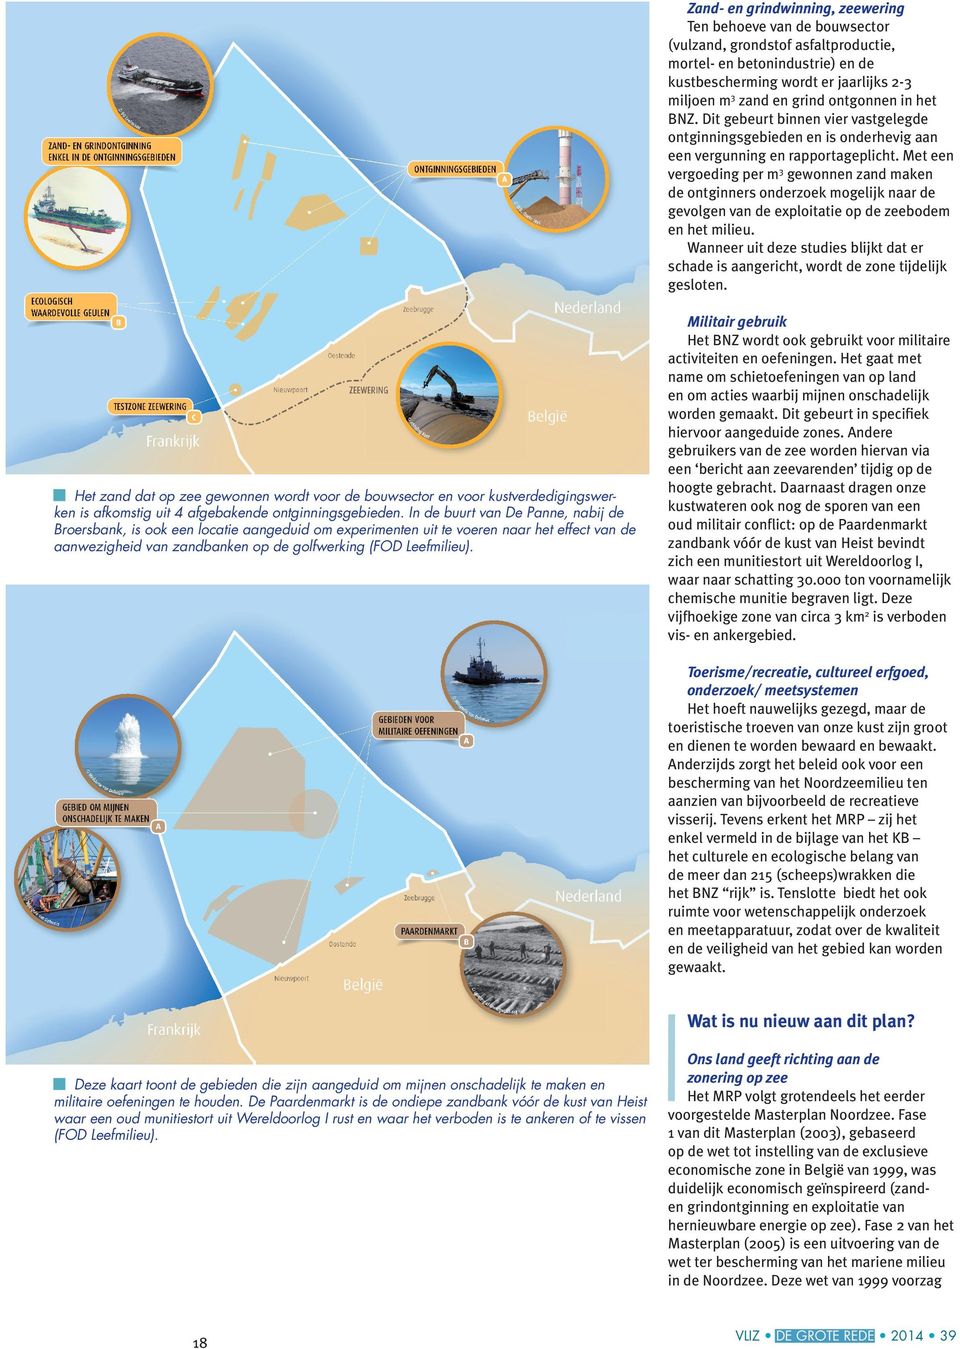 Met een vergoeding per m3 gewonnen zand maken de ontginners onderzoek mogelijk naar de gevolgen van de exploitatie op de zeebodem en het milieu.